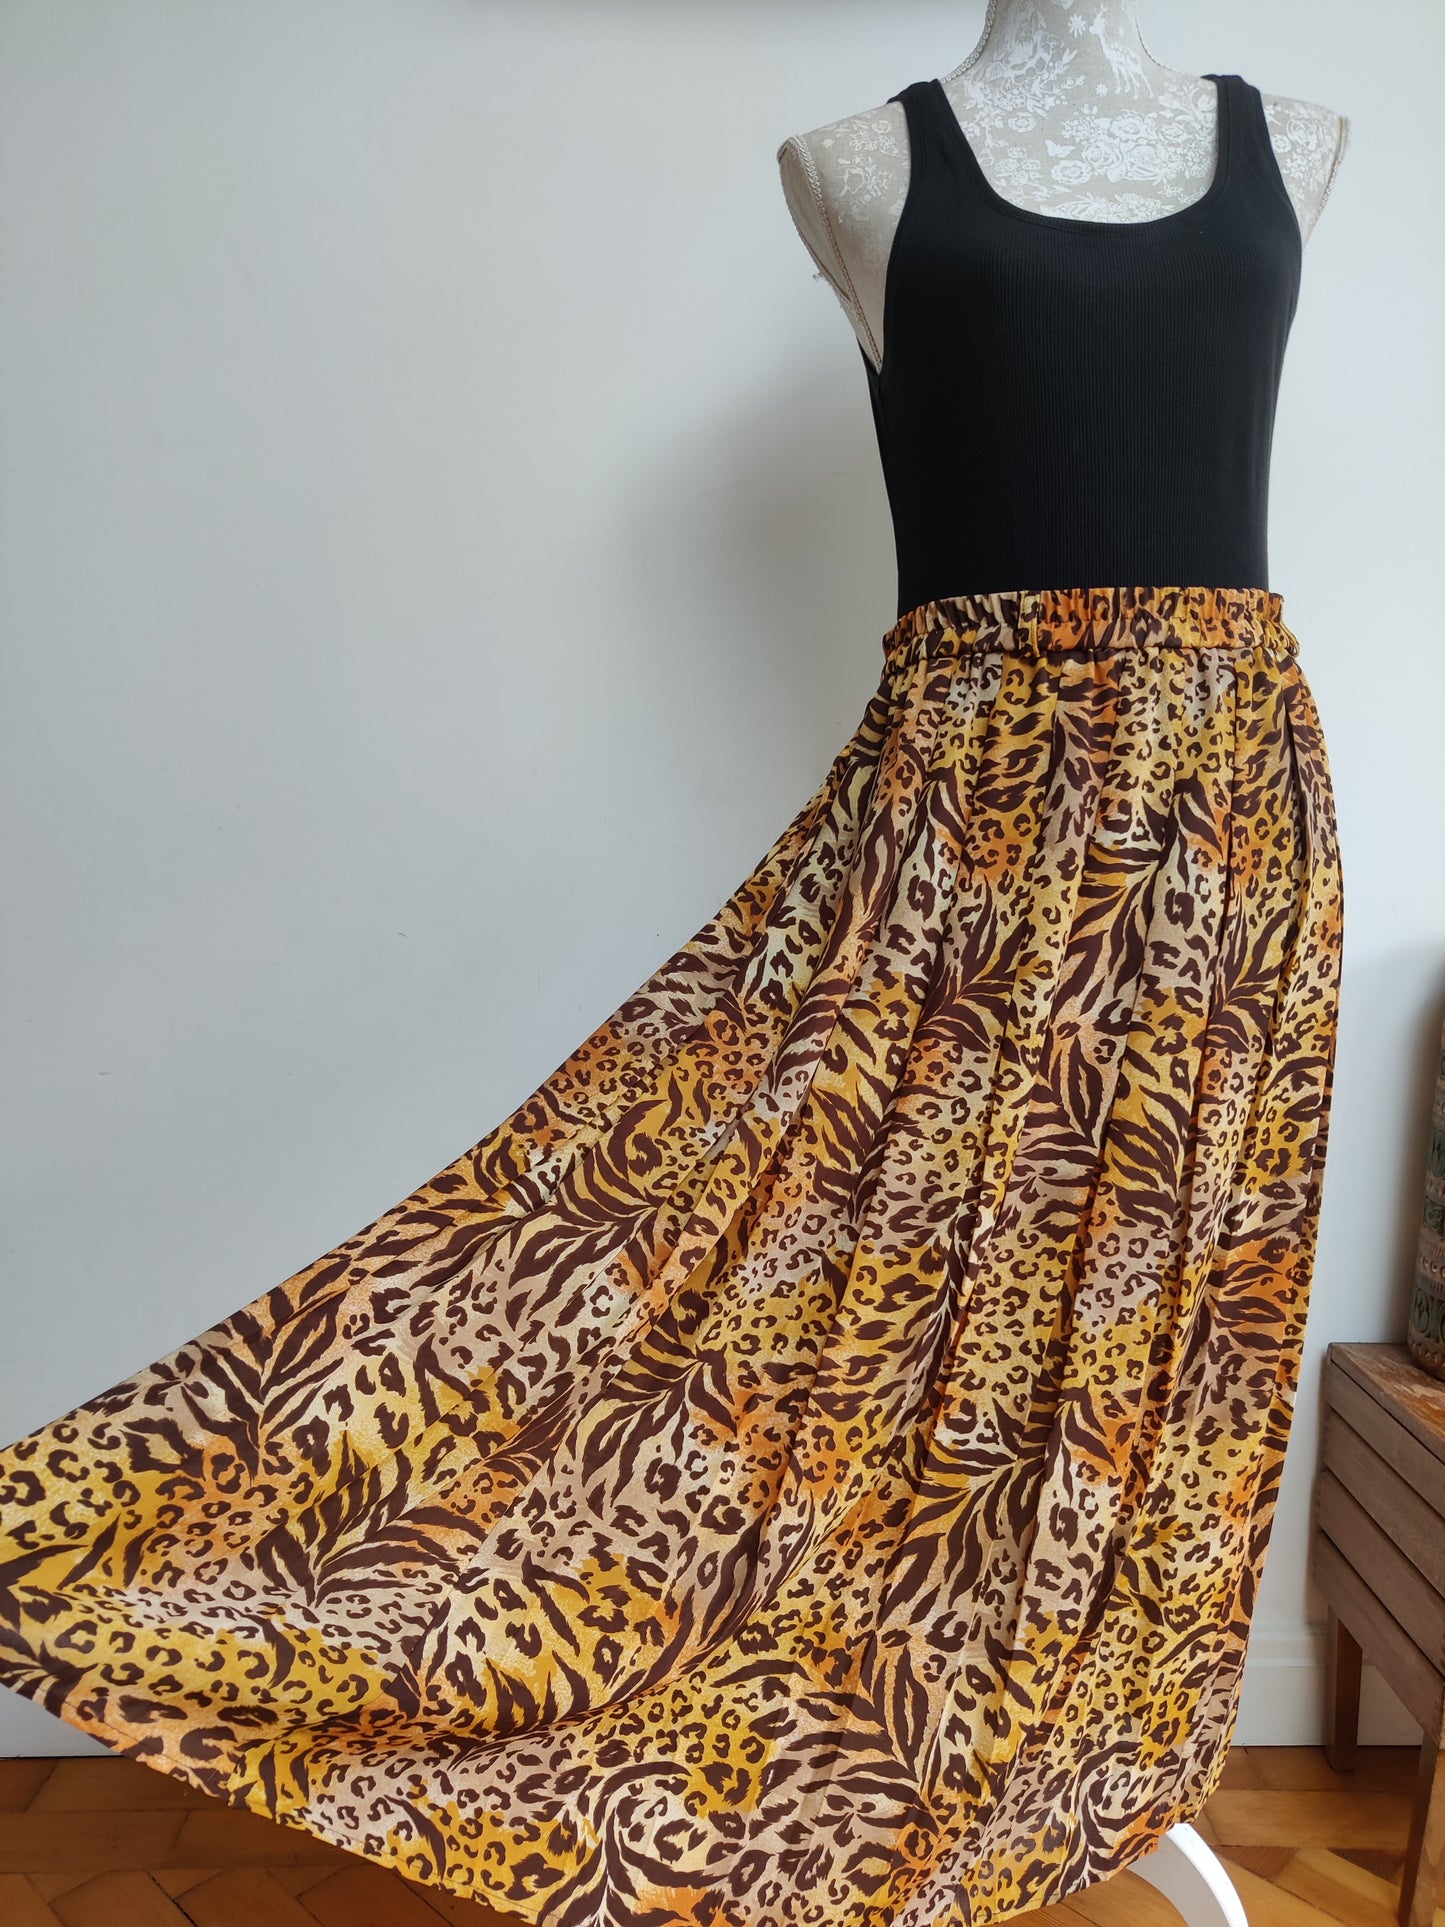 Vintage leopard print skirt